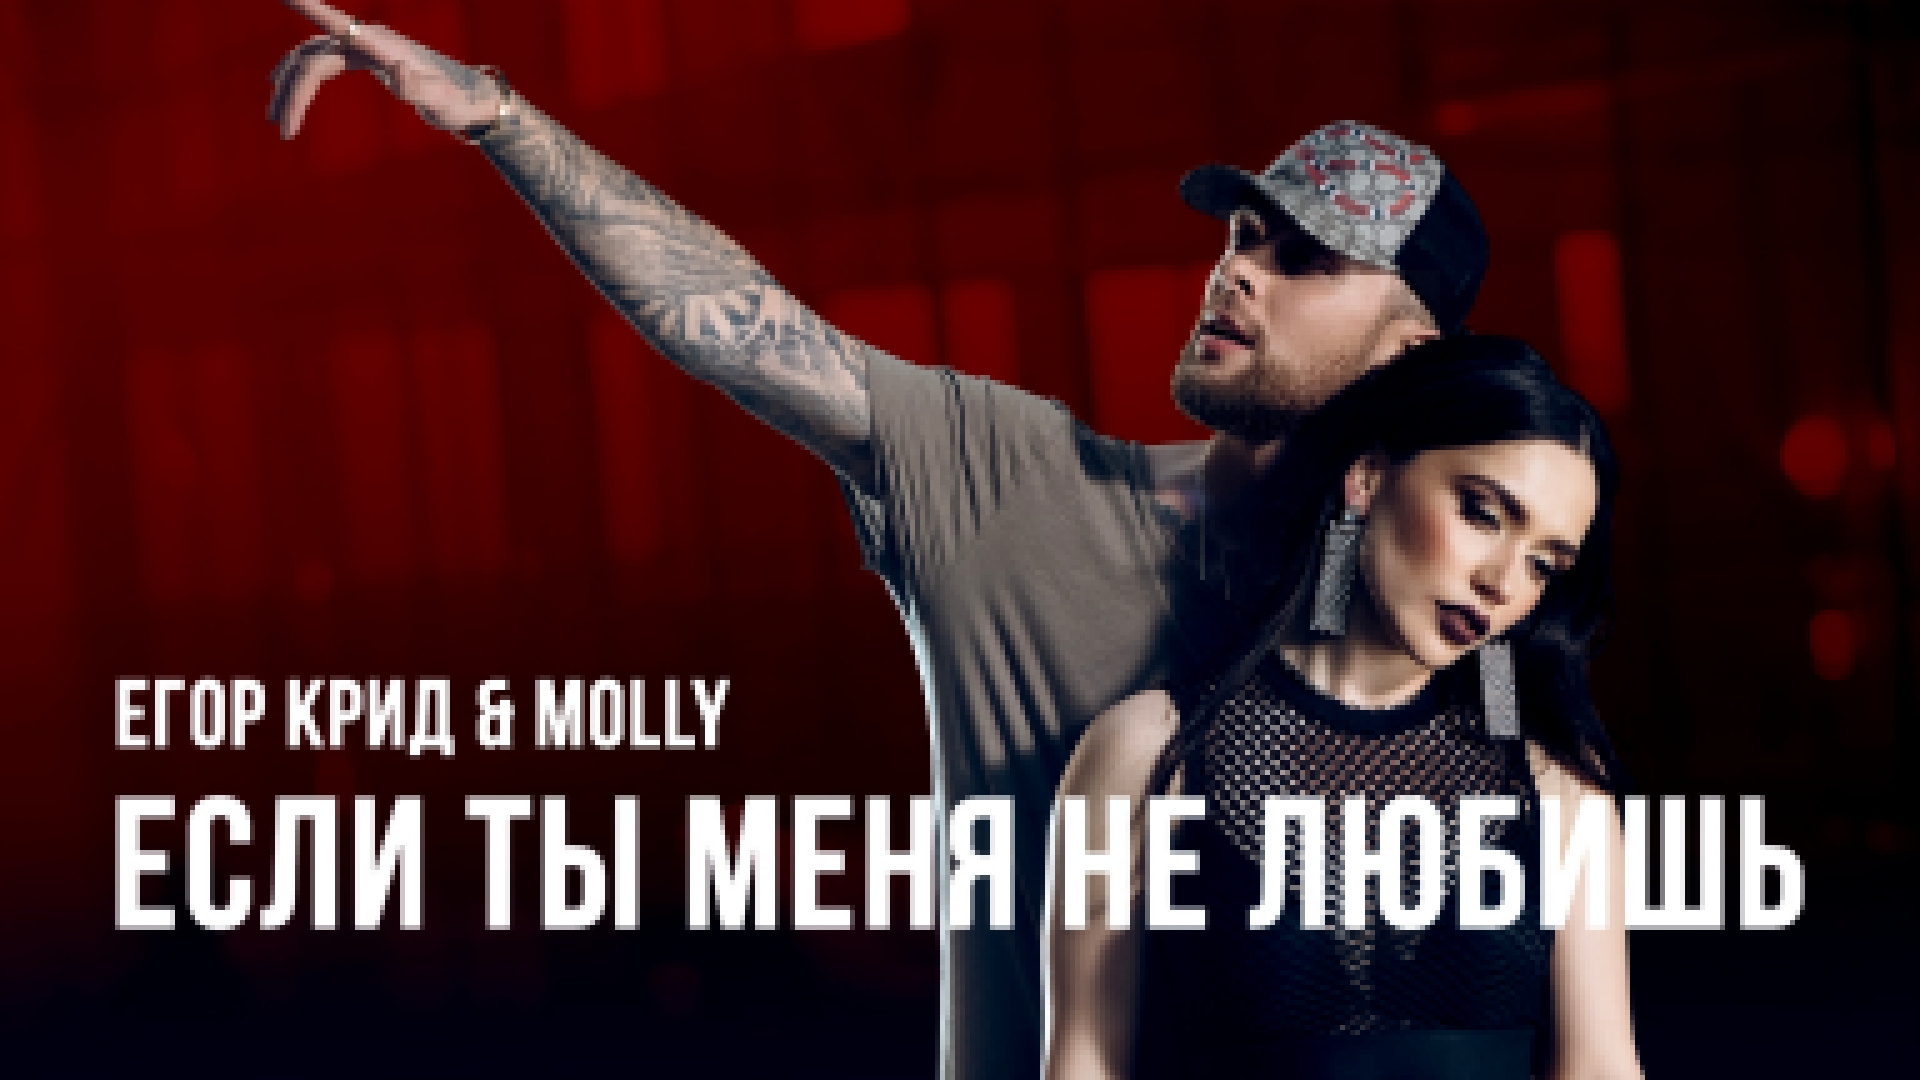 Подборка Егор Крид & MOLLY - Если ты меня не любишь (премьера клипа, 2017)